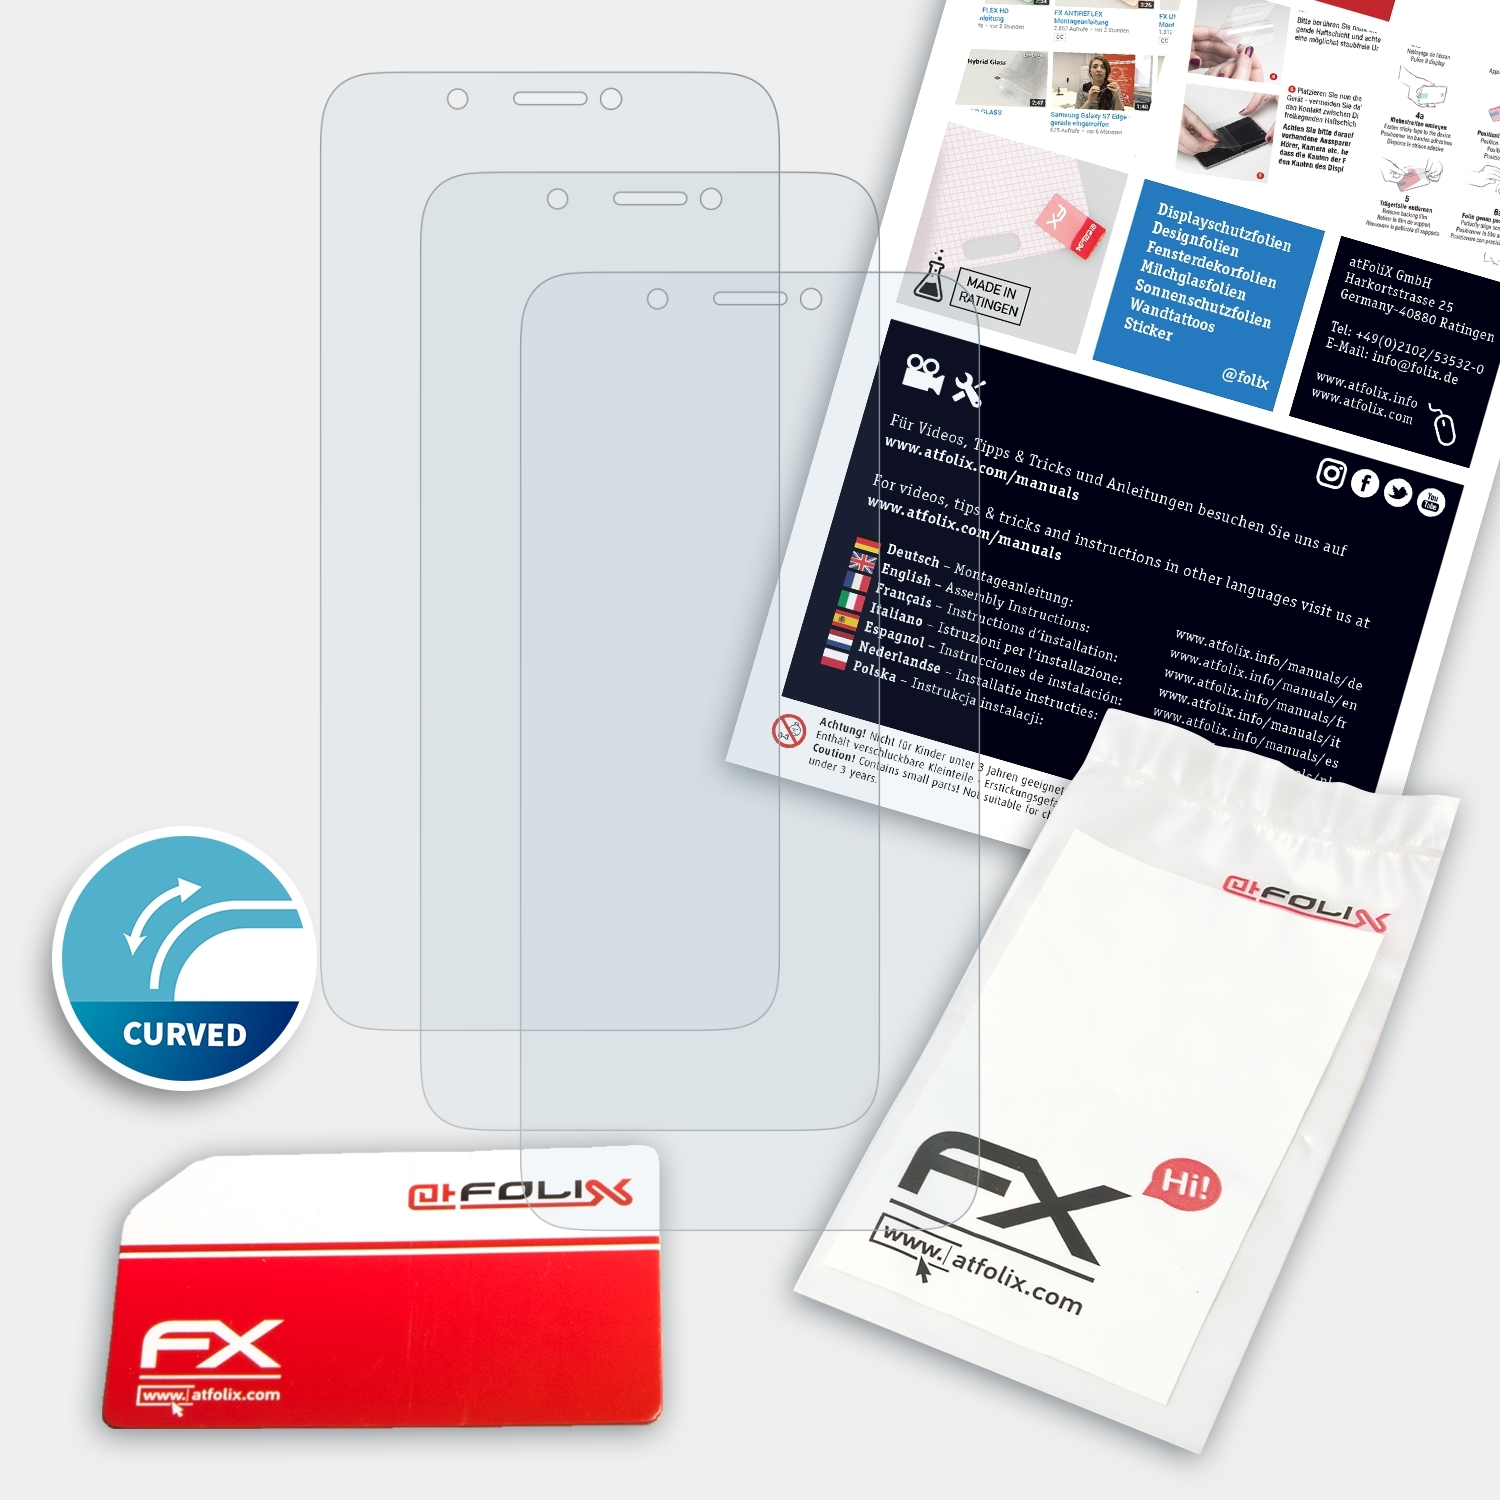 FX-ActiFleX 3x HTC 12+) Displayschutz(für Desire ATFOLIX